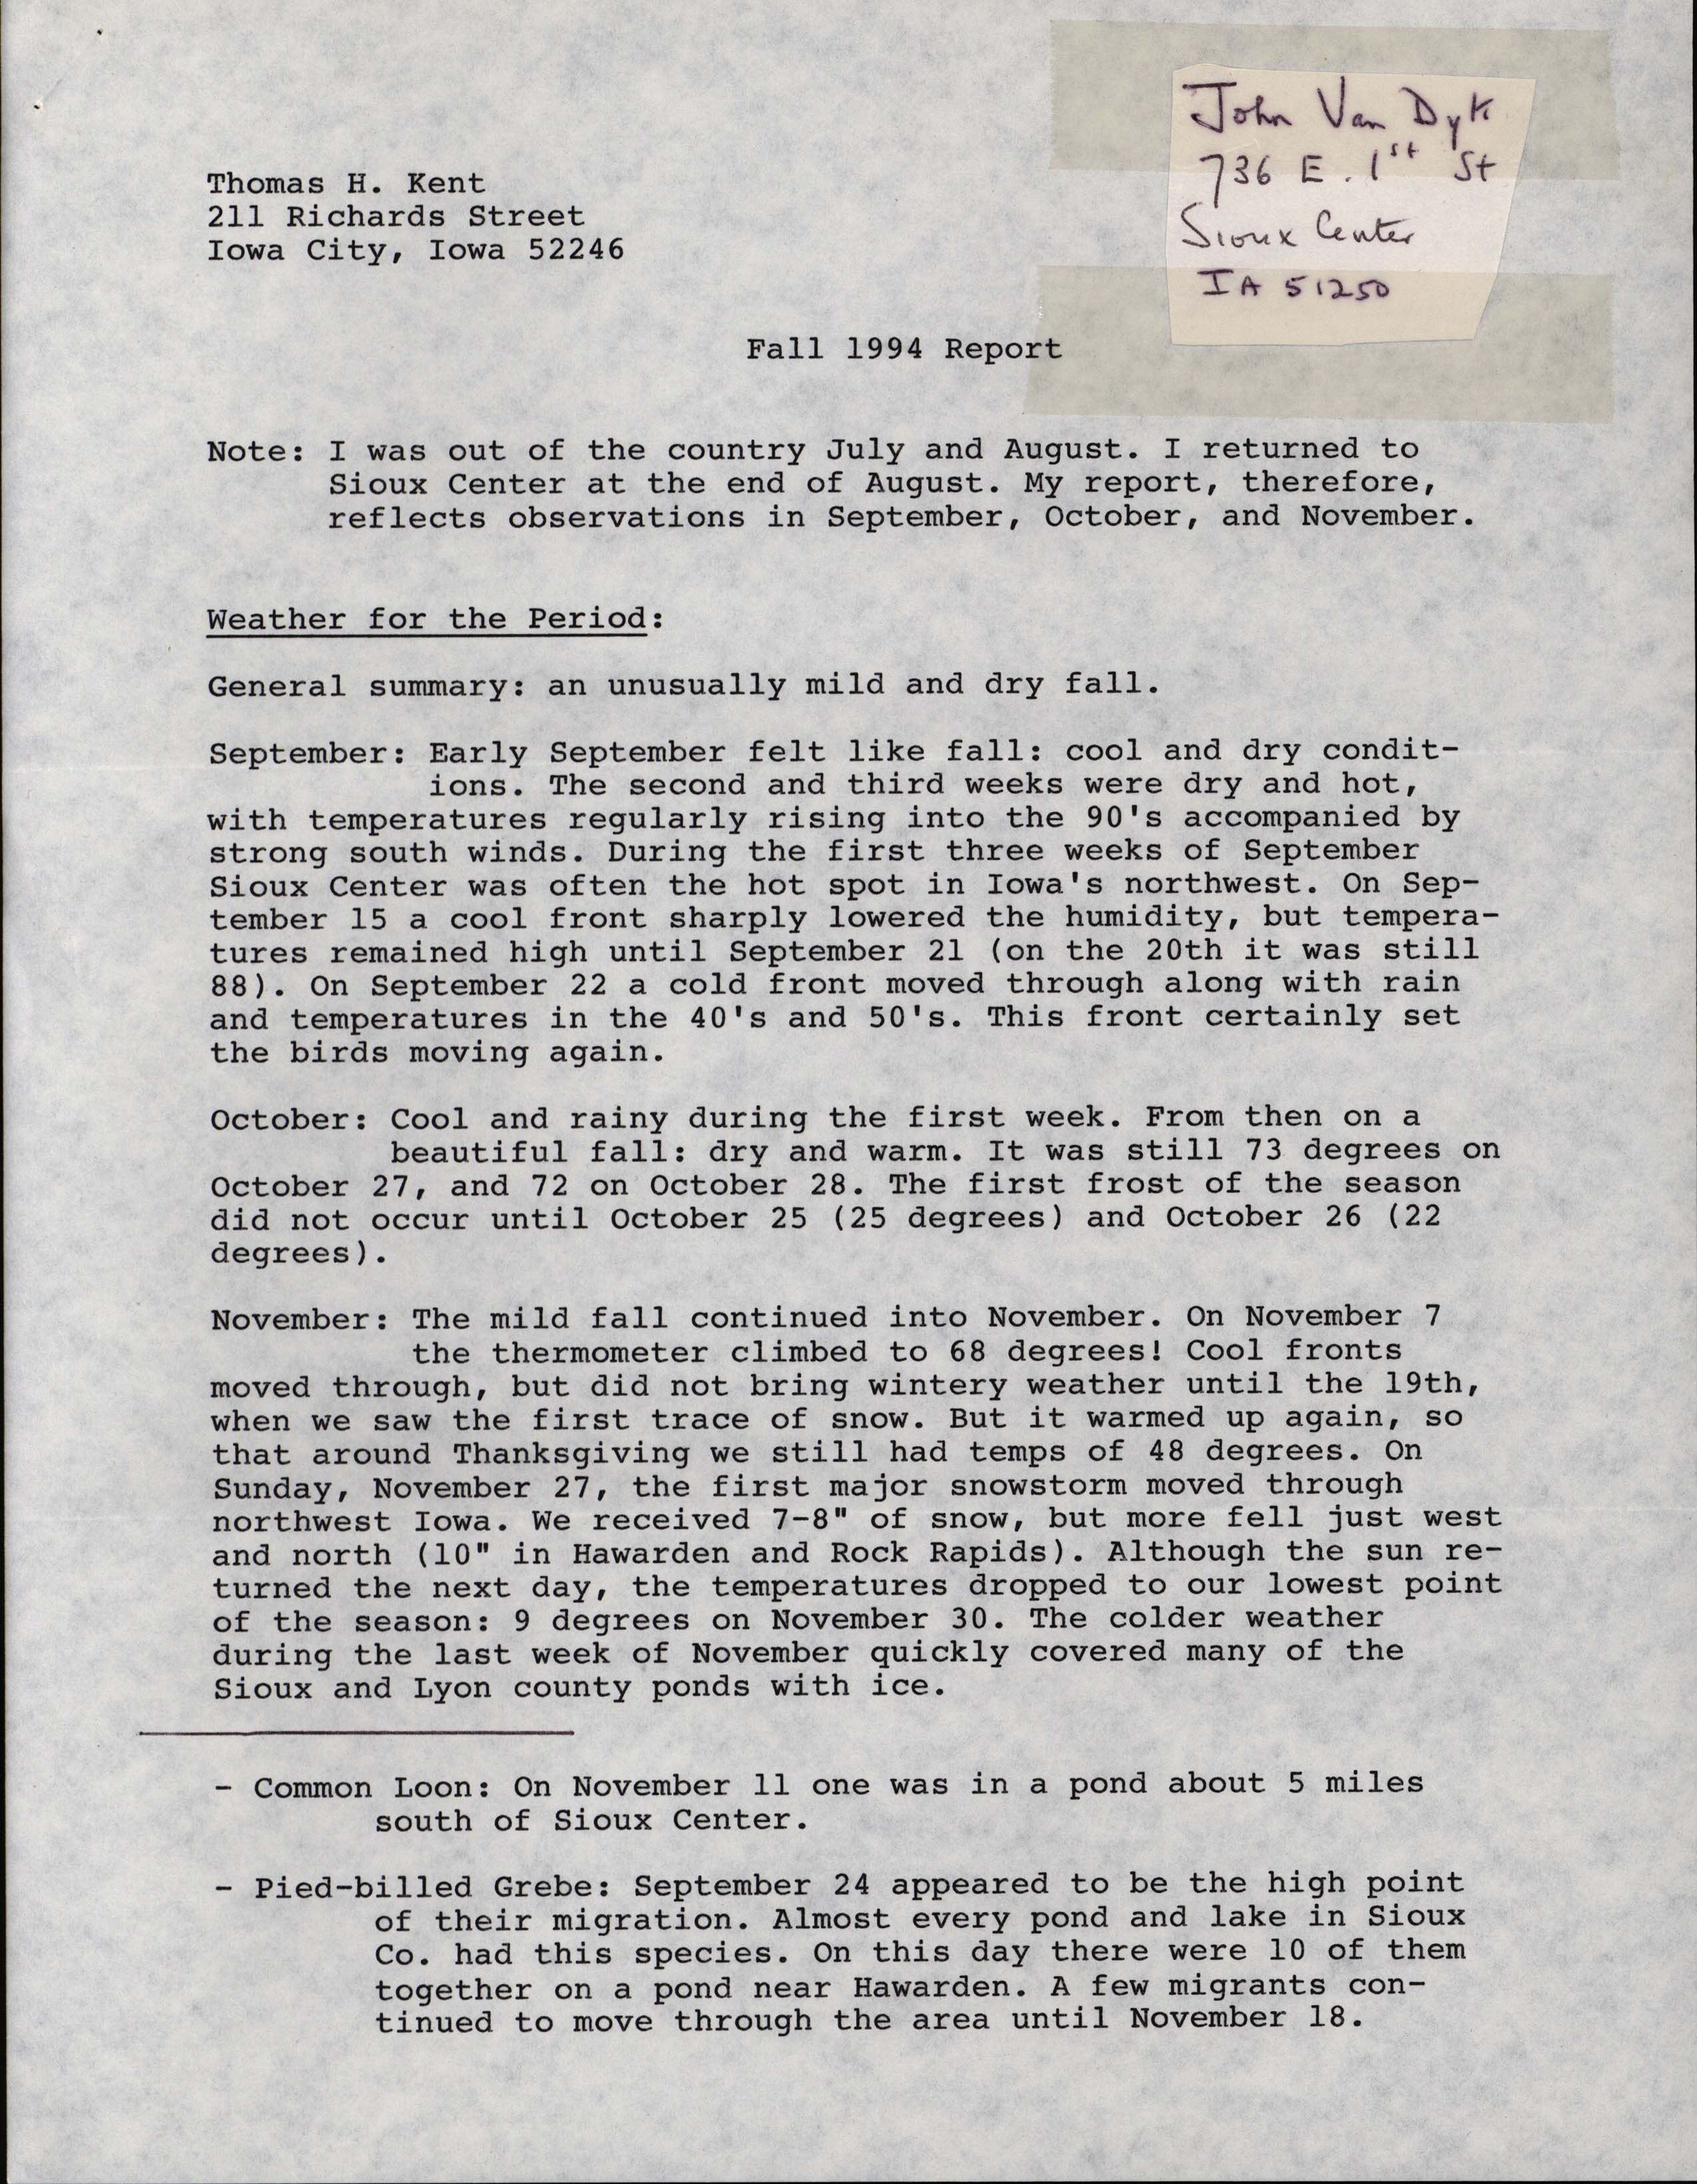 Fall 1994 report, John Van Dyk